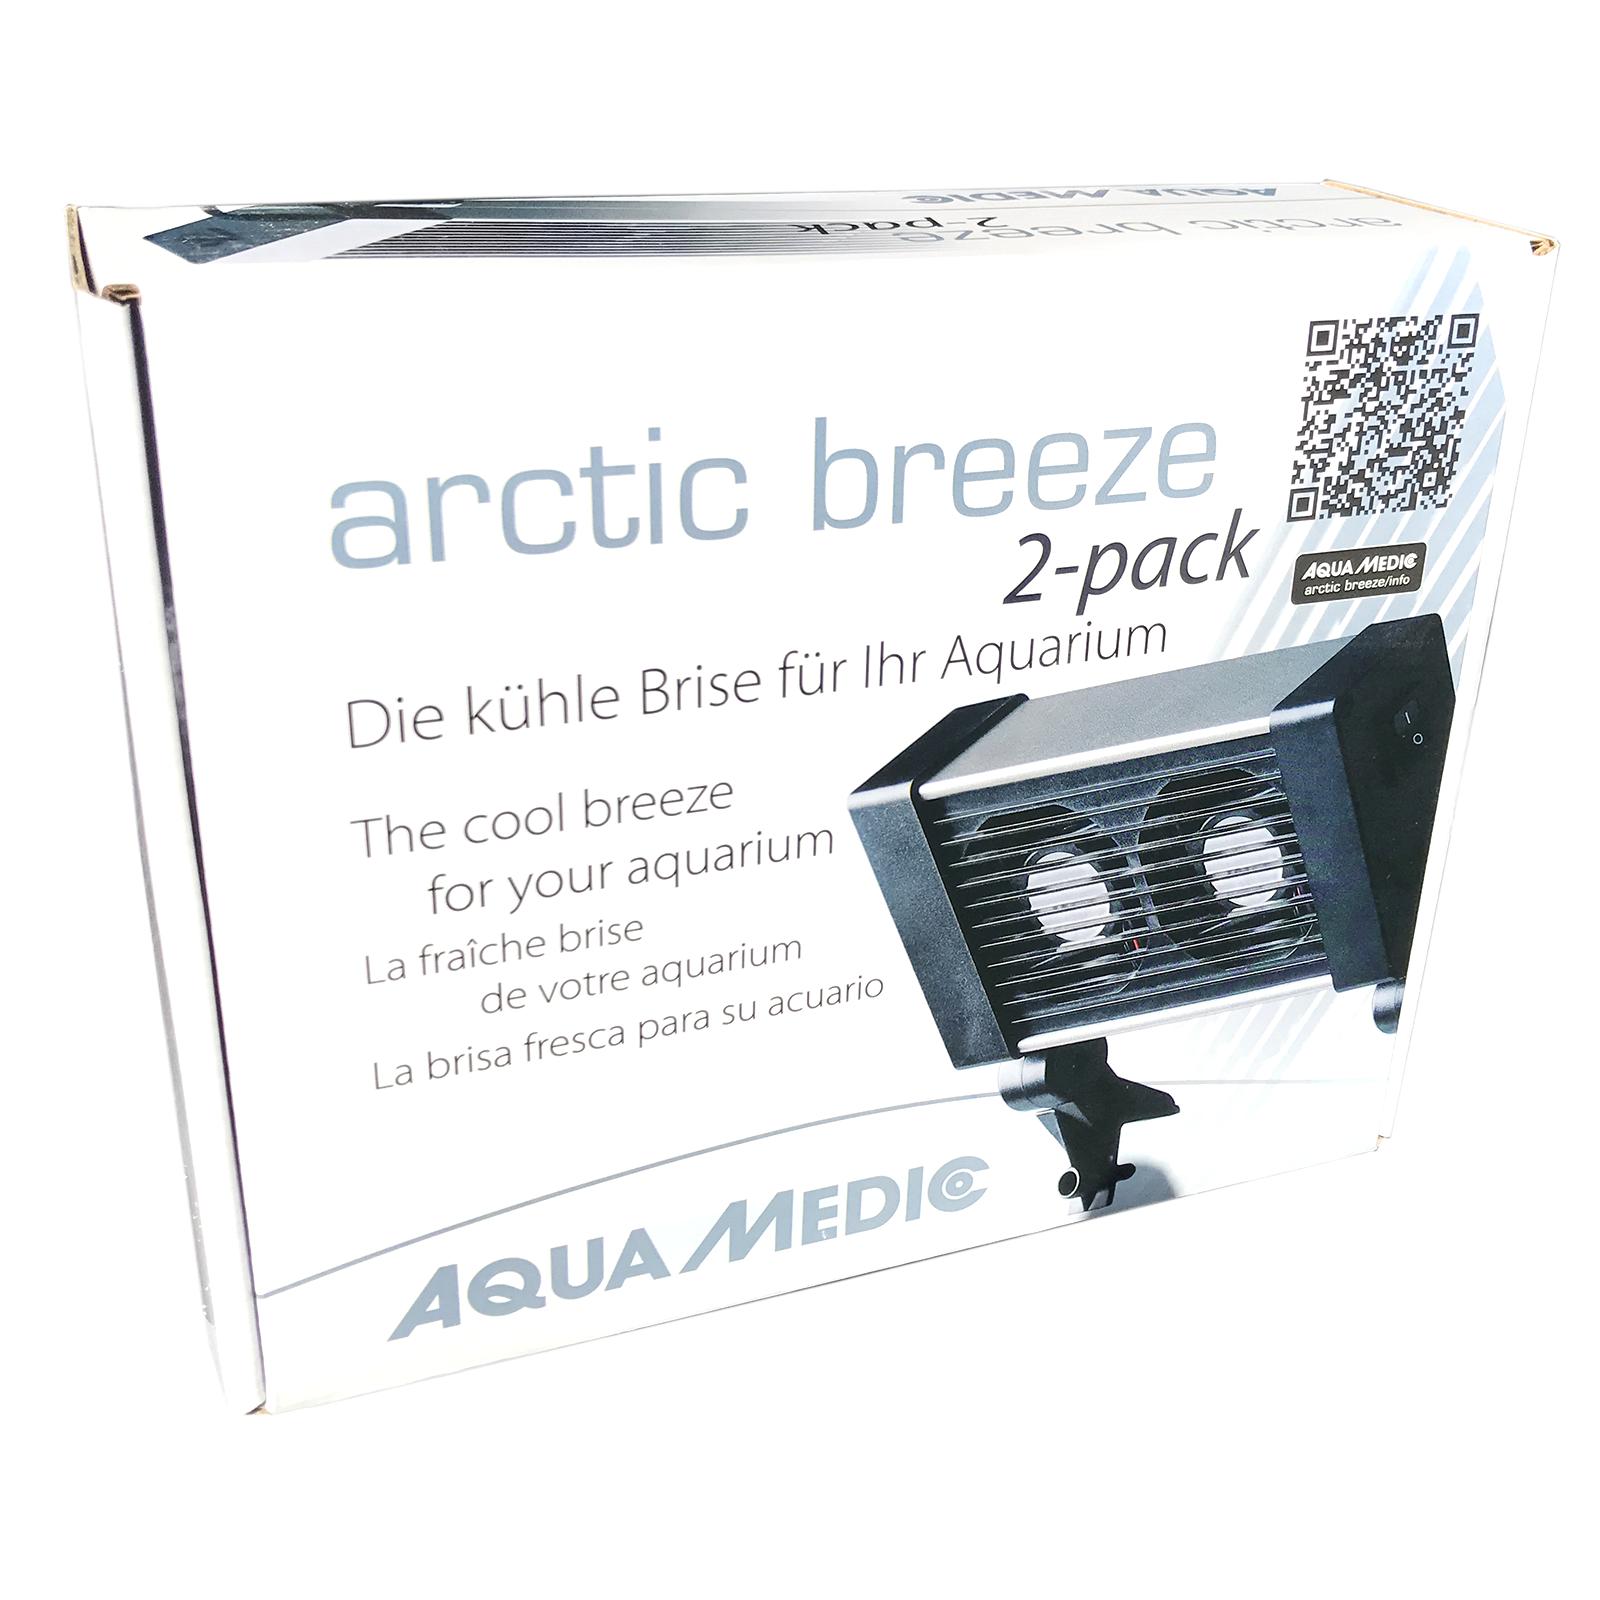 Вентилятор для акваріума Aqua Medic arctic breeze 2-pack 56560